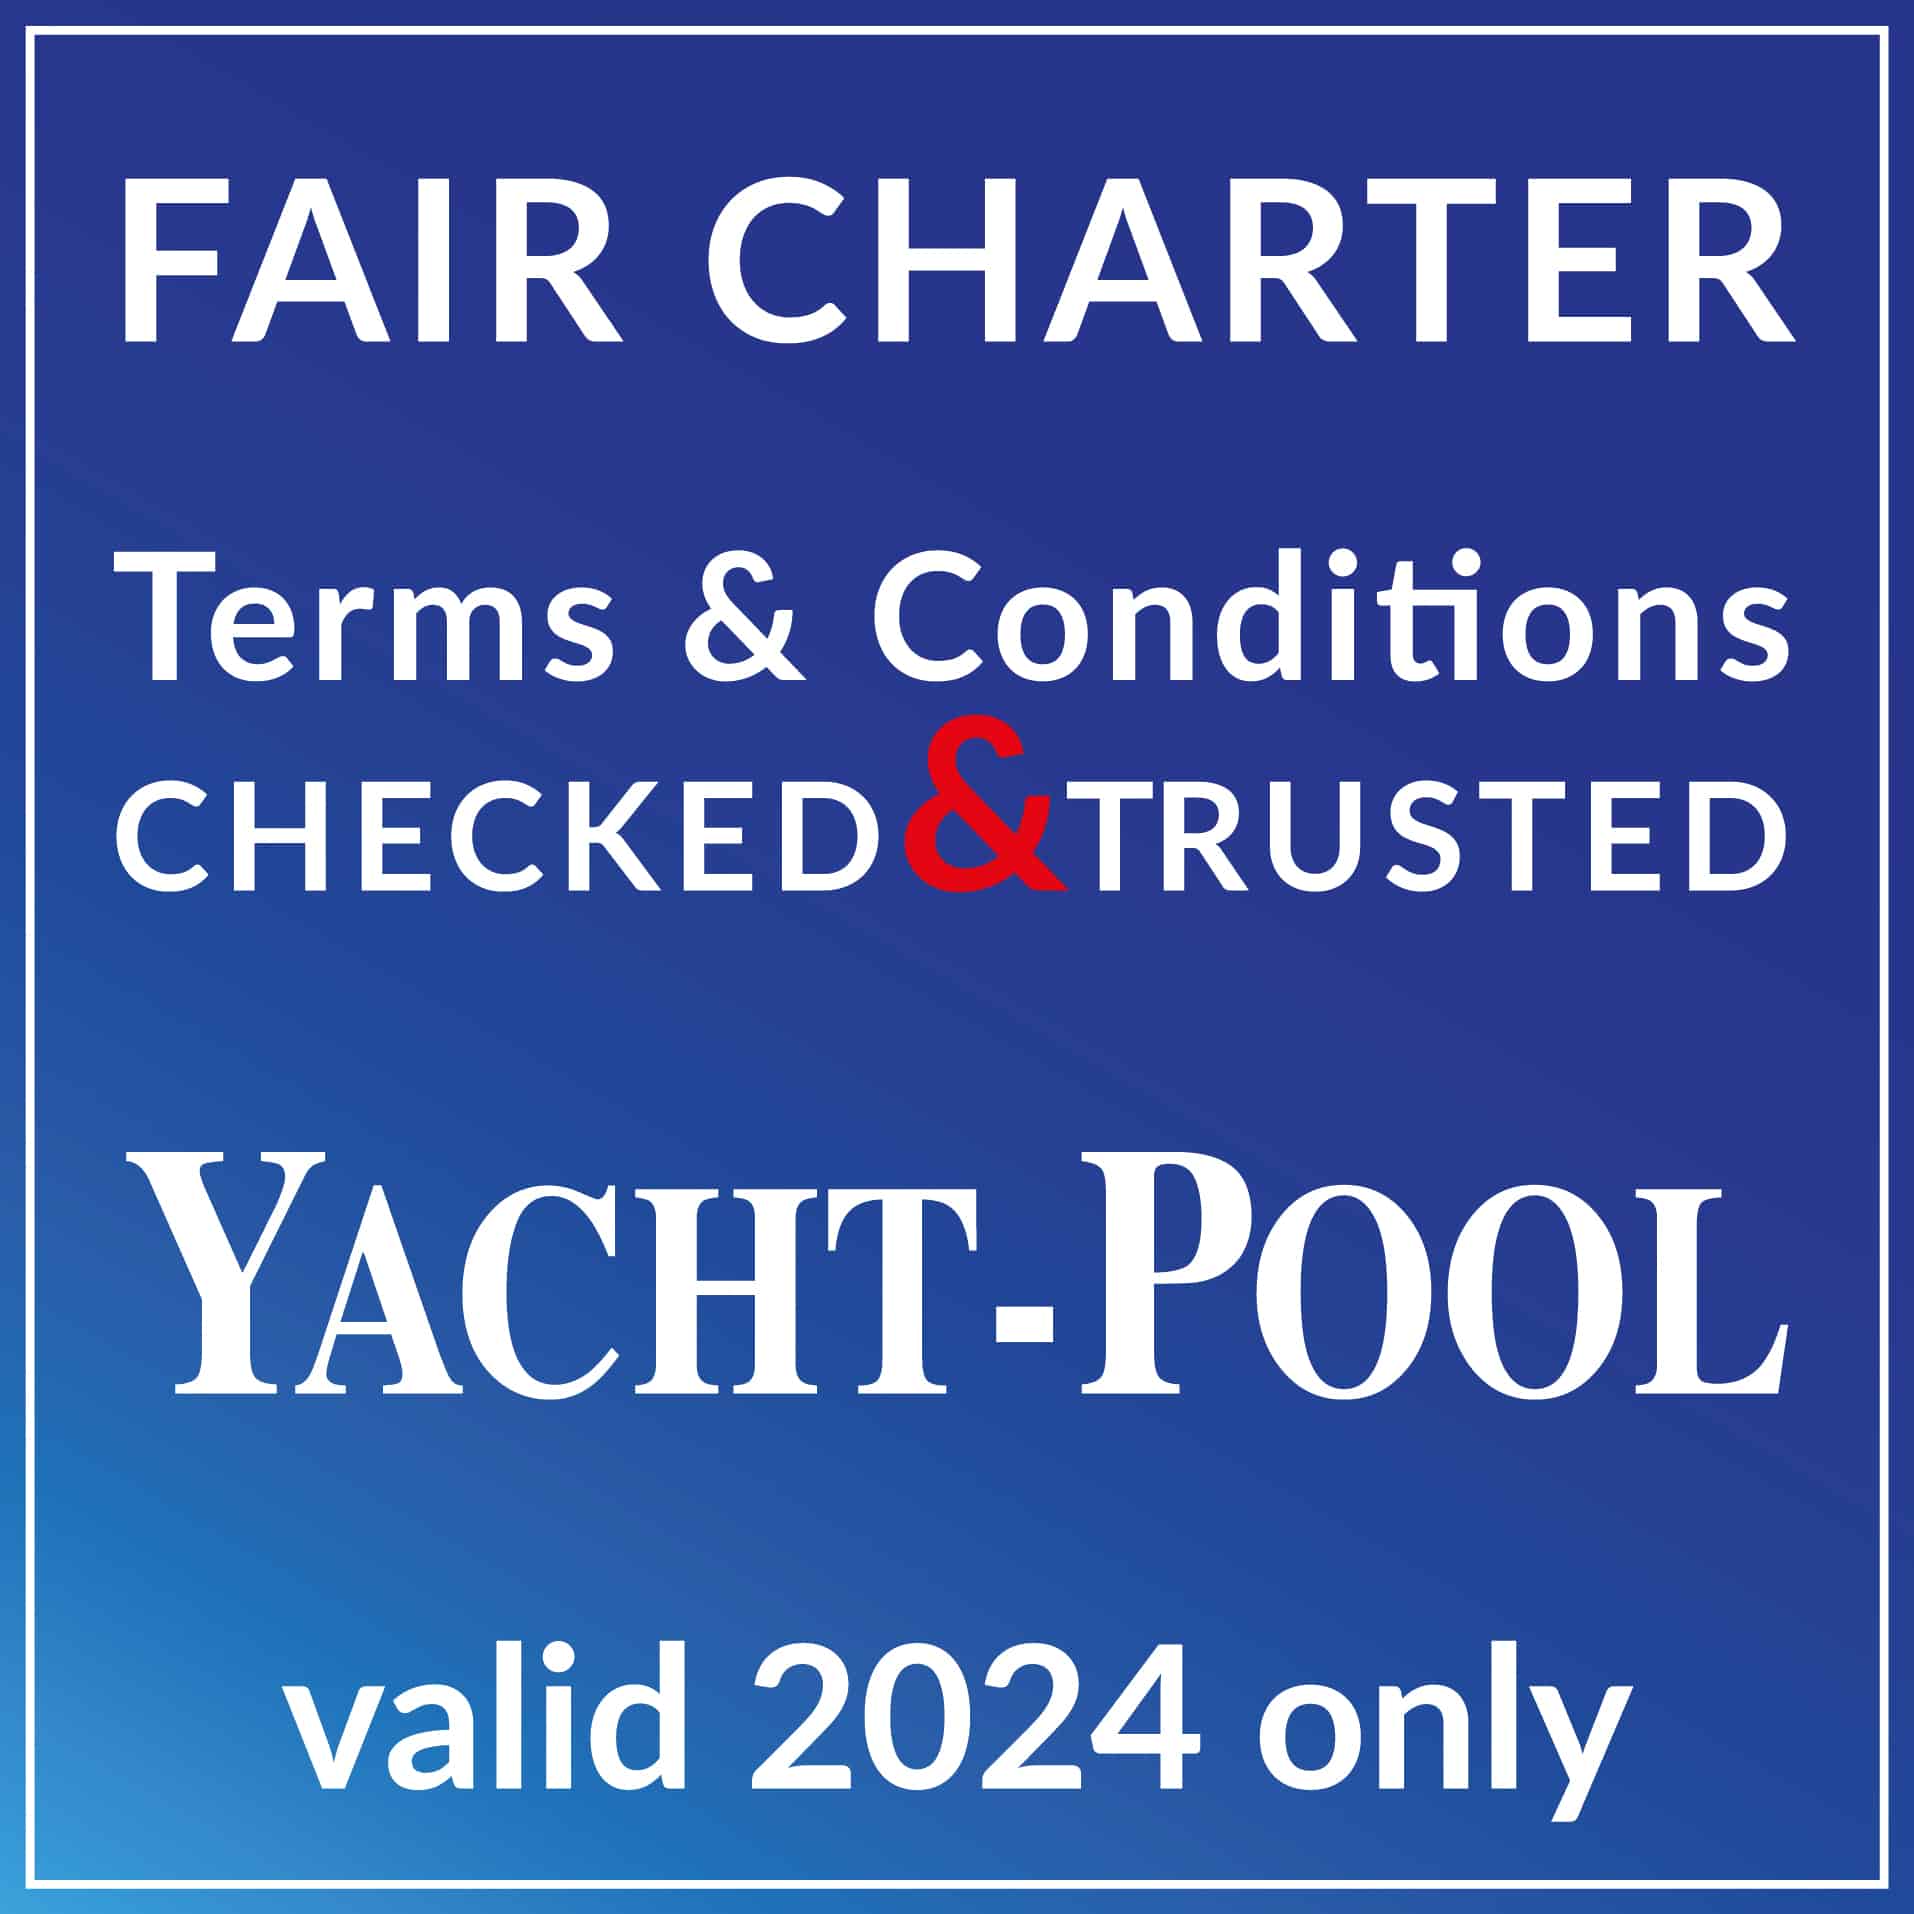 Fair Charter | YACHT-POOL